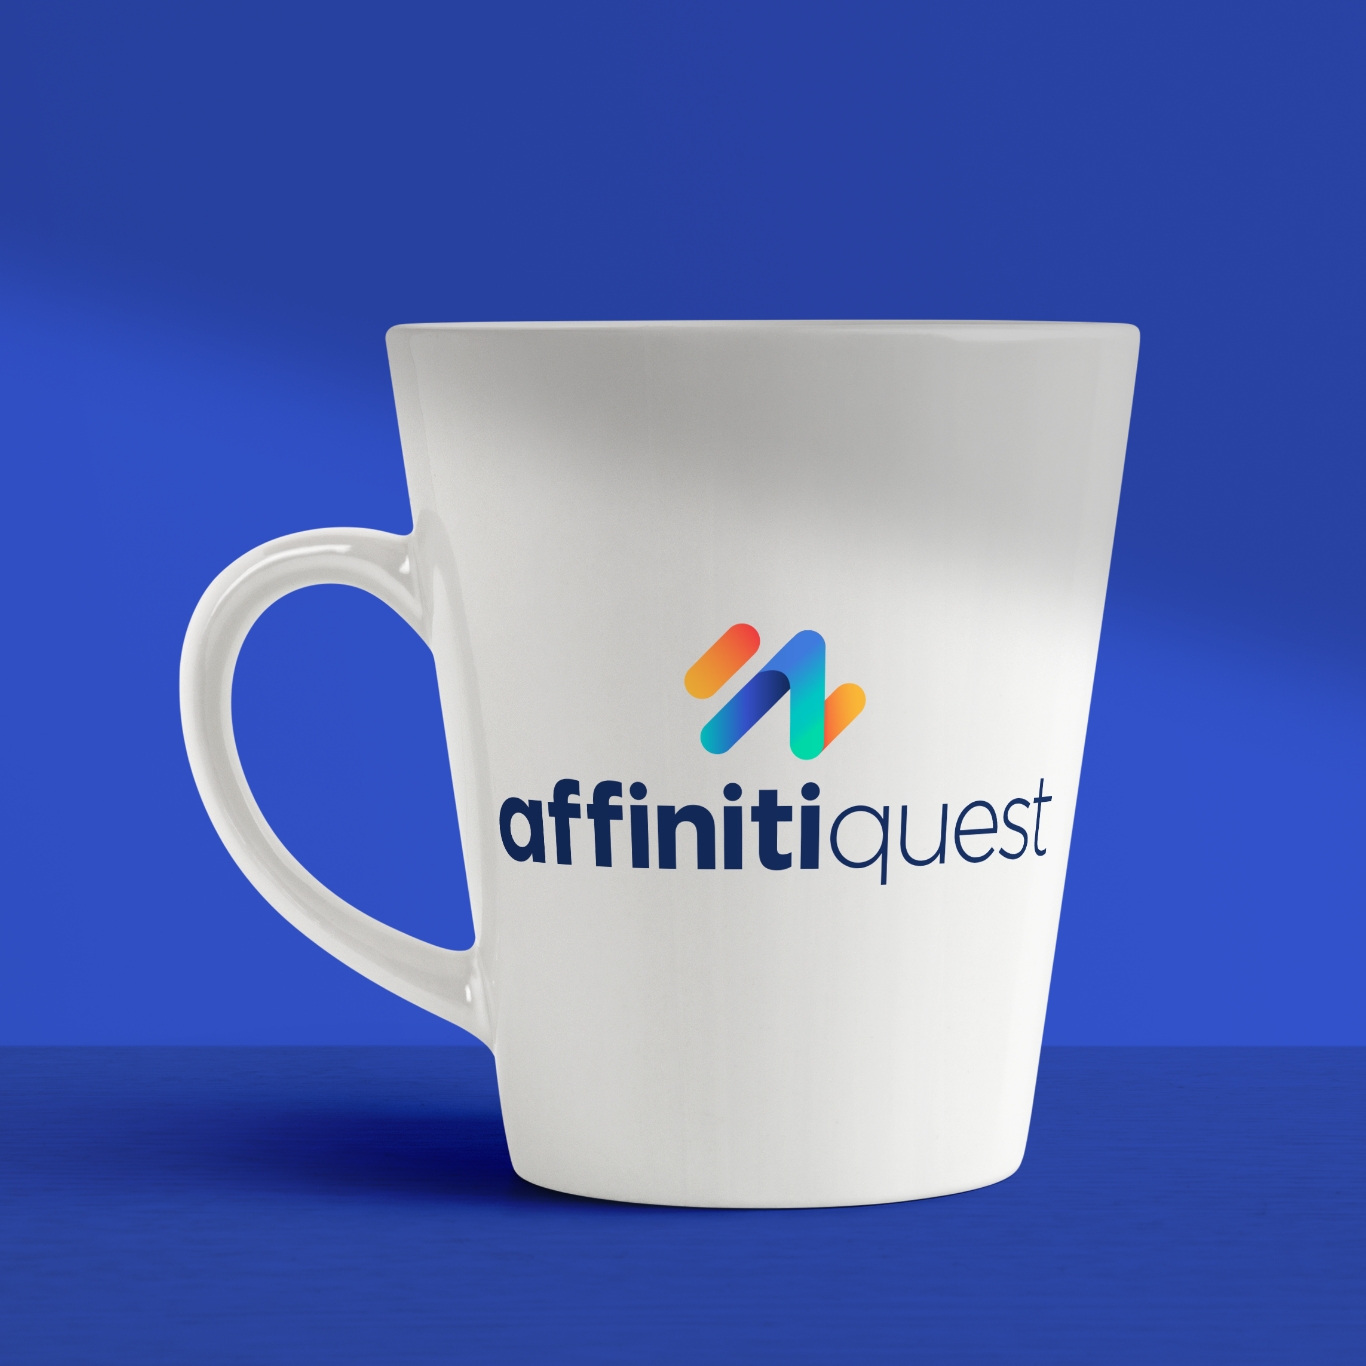 AffinitiQuest branded mug